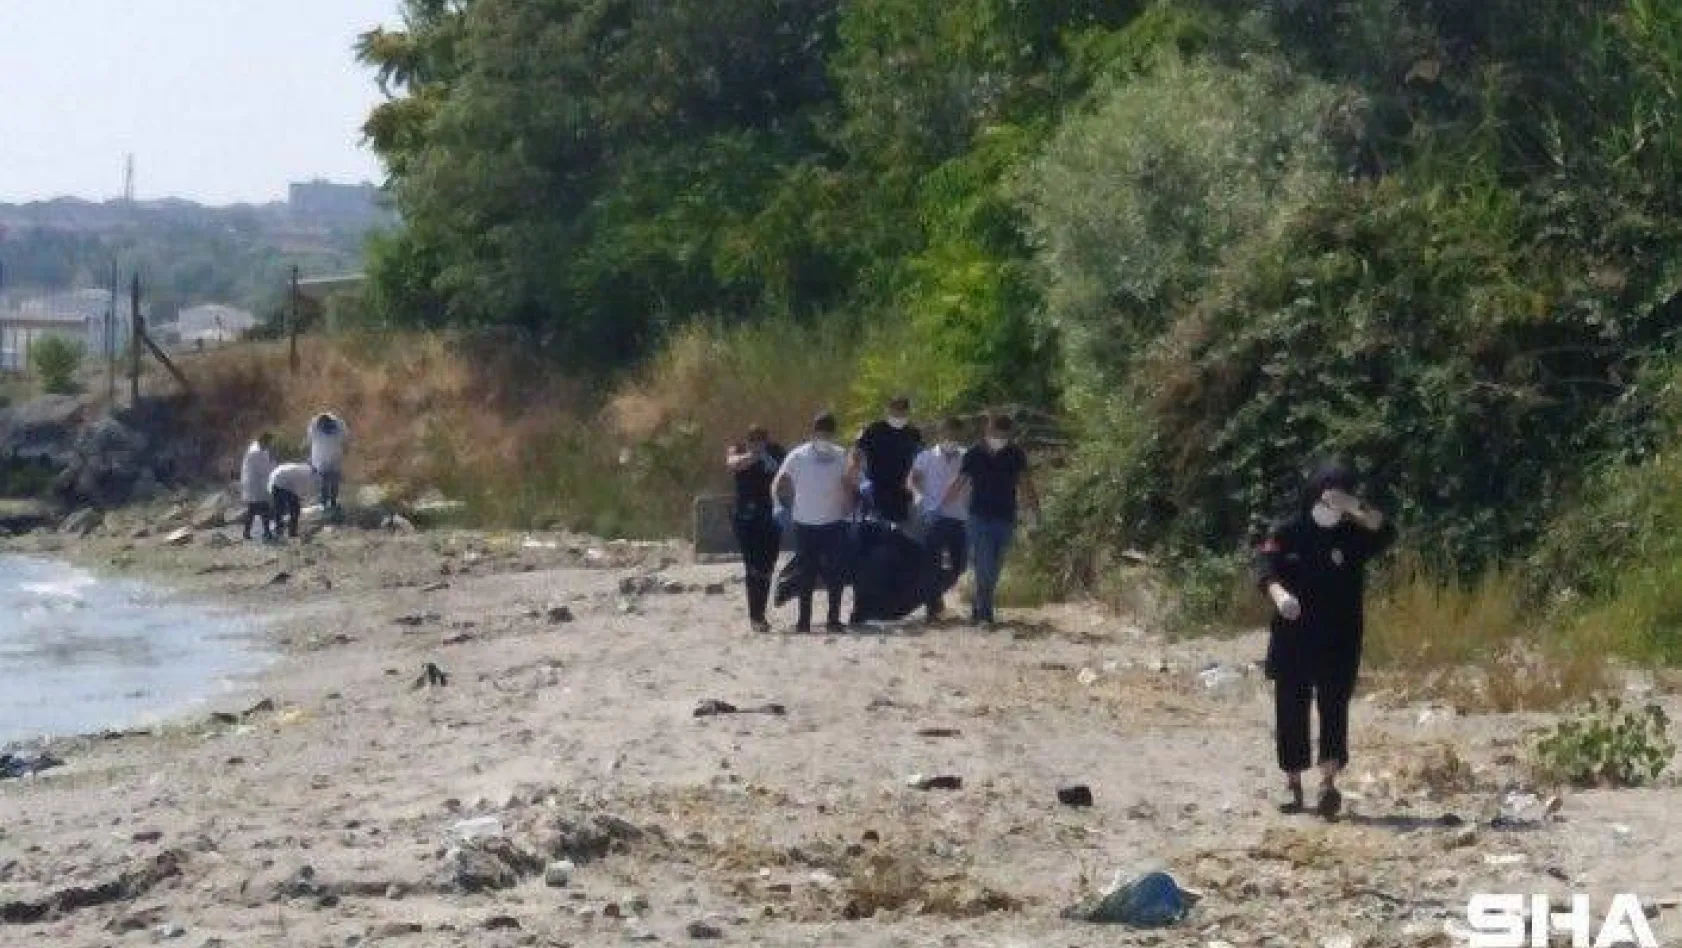 Avcılar'da sahile vurmuş erkek cesedi bulundu